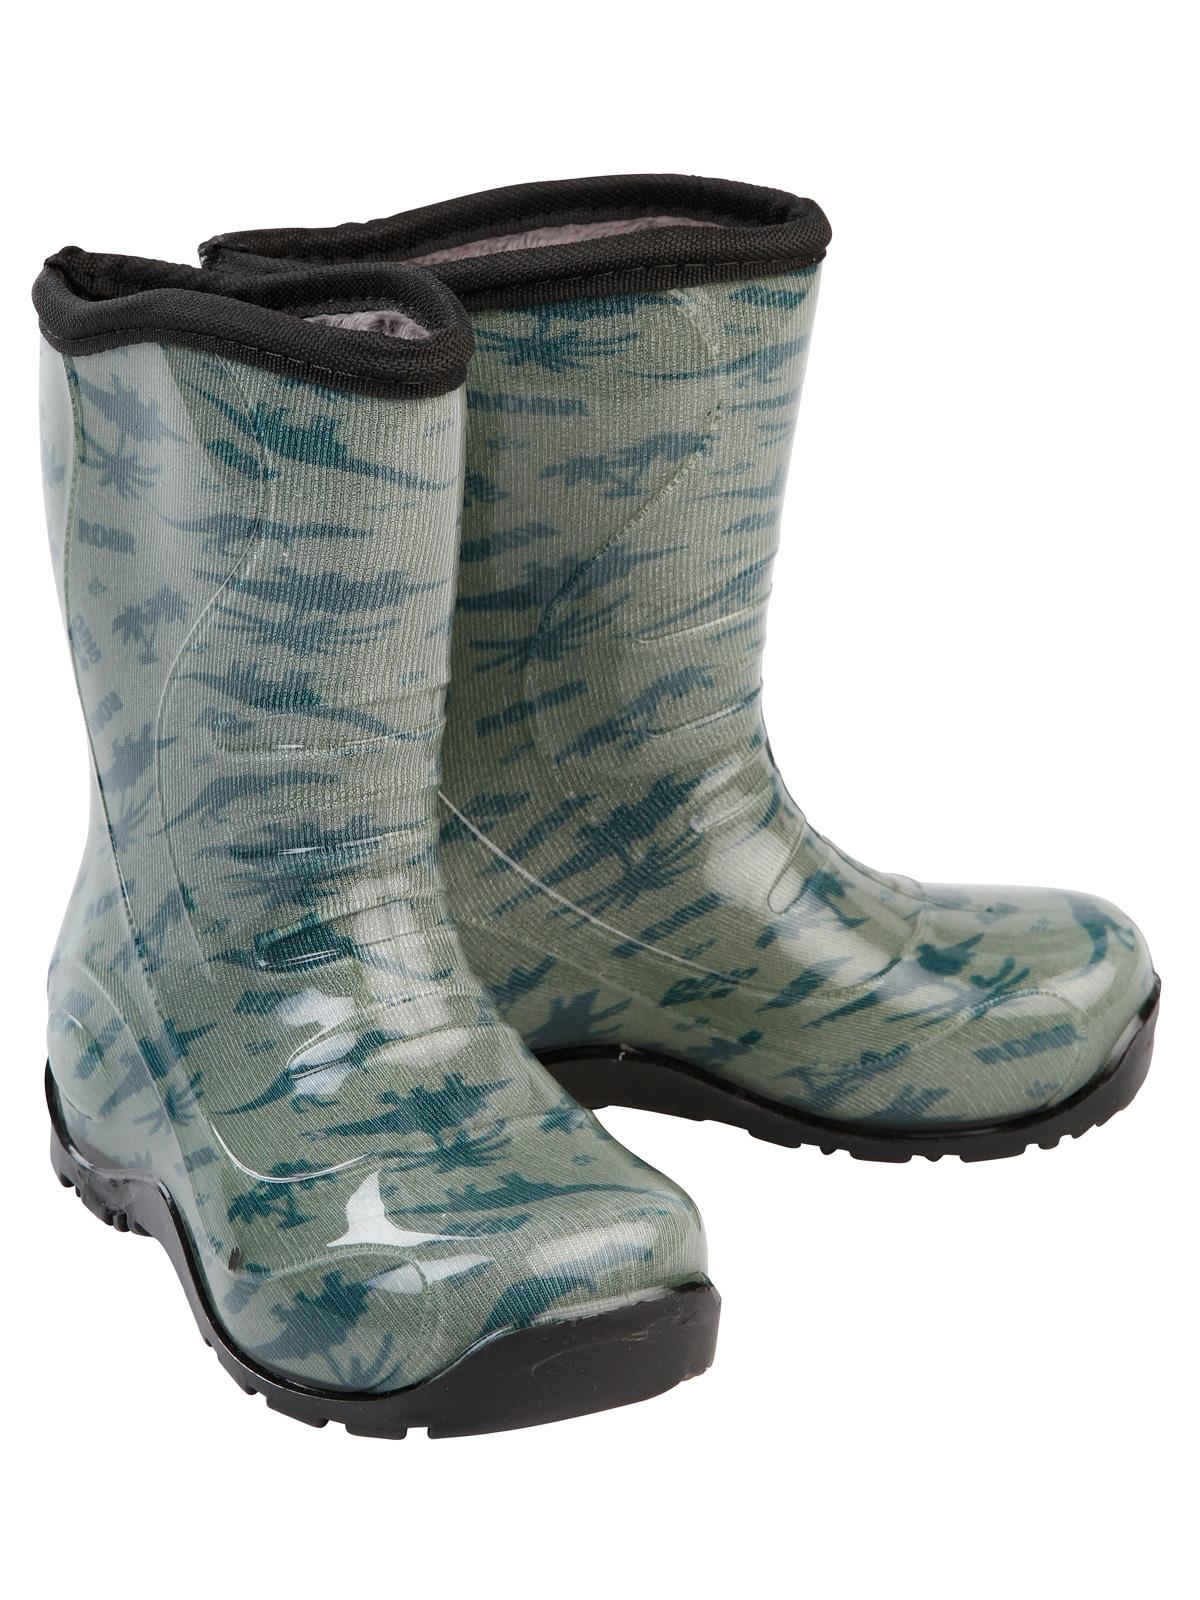 Boots Erkek Çocuk Dinazor Desenli Yağmur Çizmesi 24-28 Numara Haki